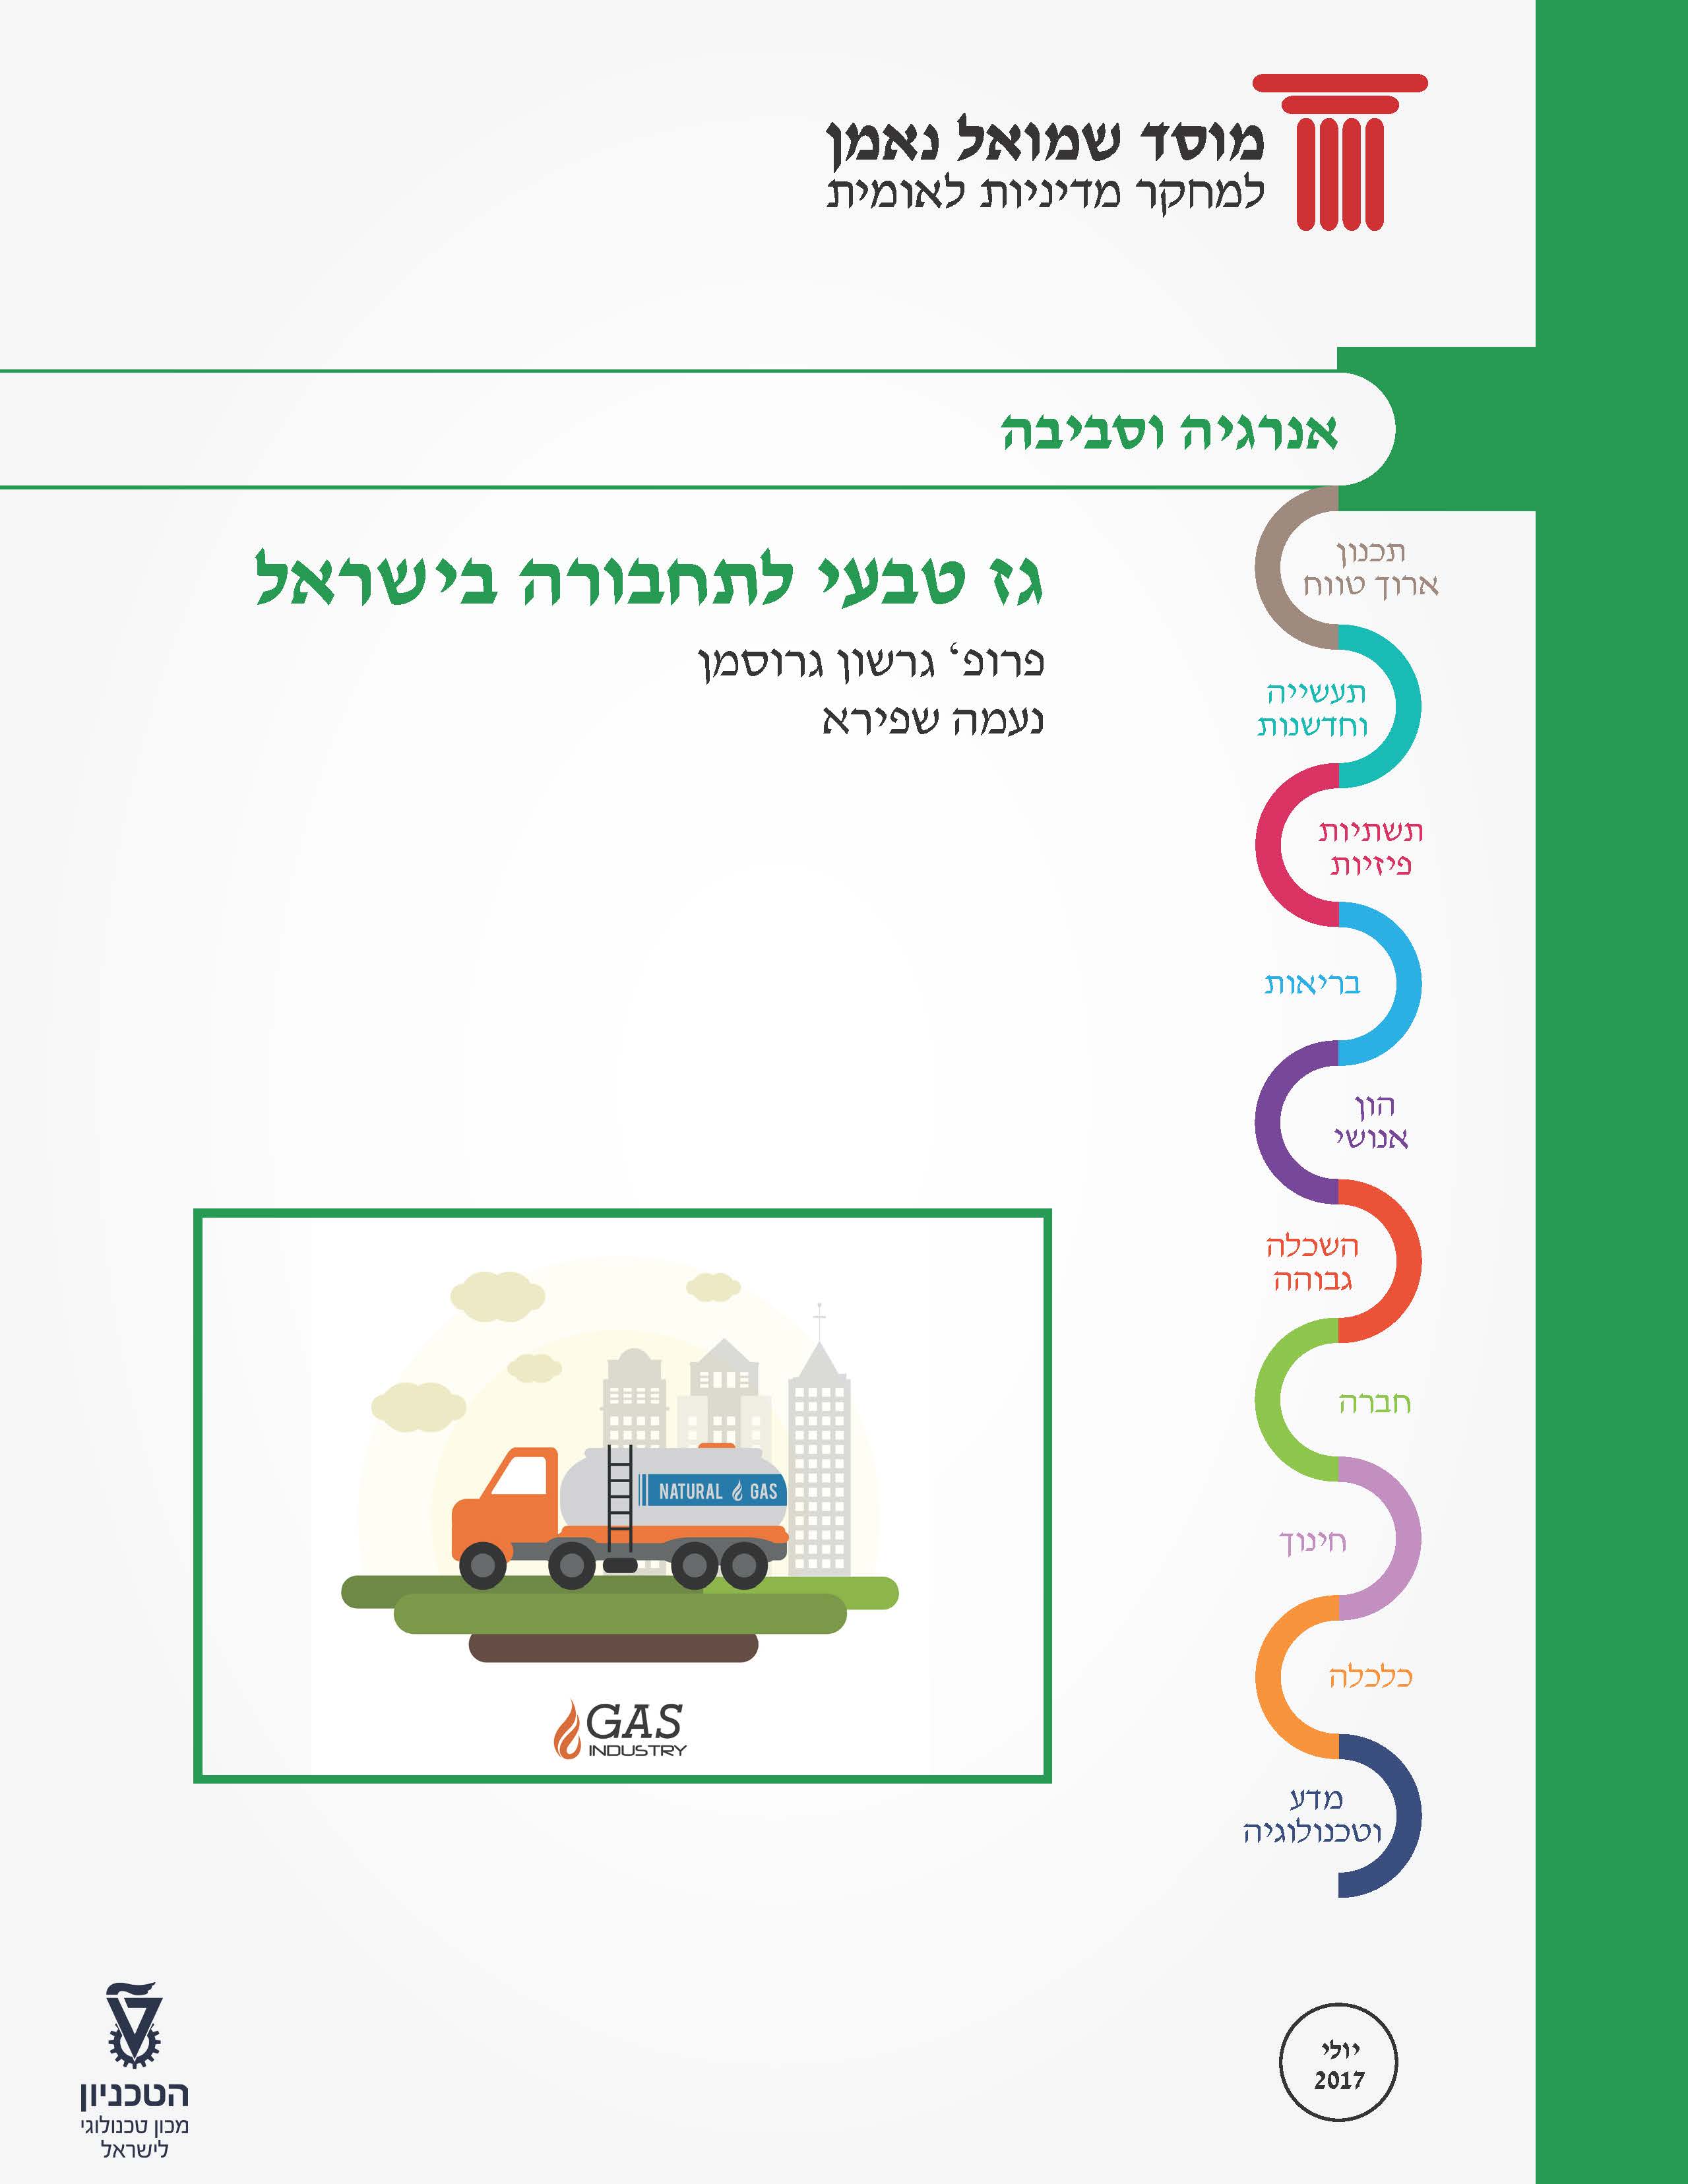 פורום אנרגיה 40: גז טבעי לתחבורה בישראל  